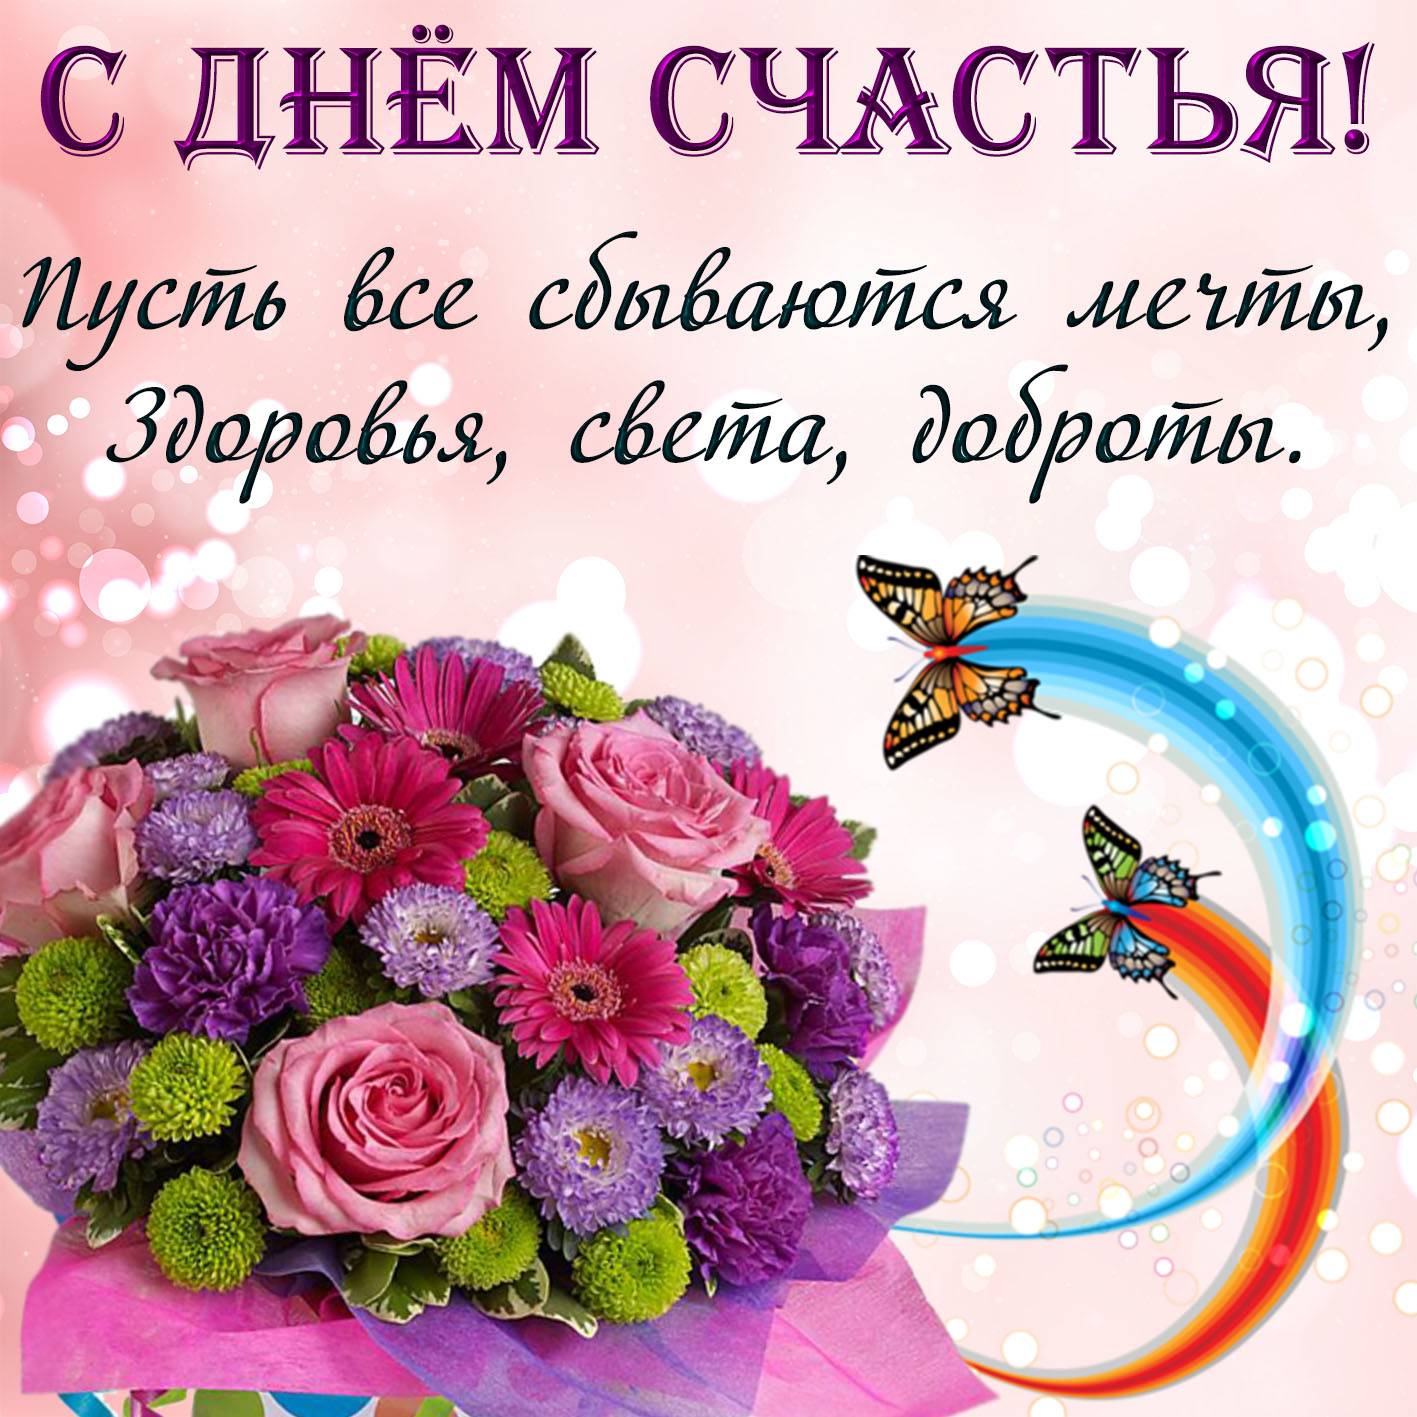 Международный день счастья: чему посвящен праздник, какого числа отмечается, история и традиции / mama66.ru